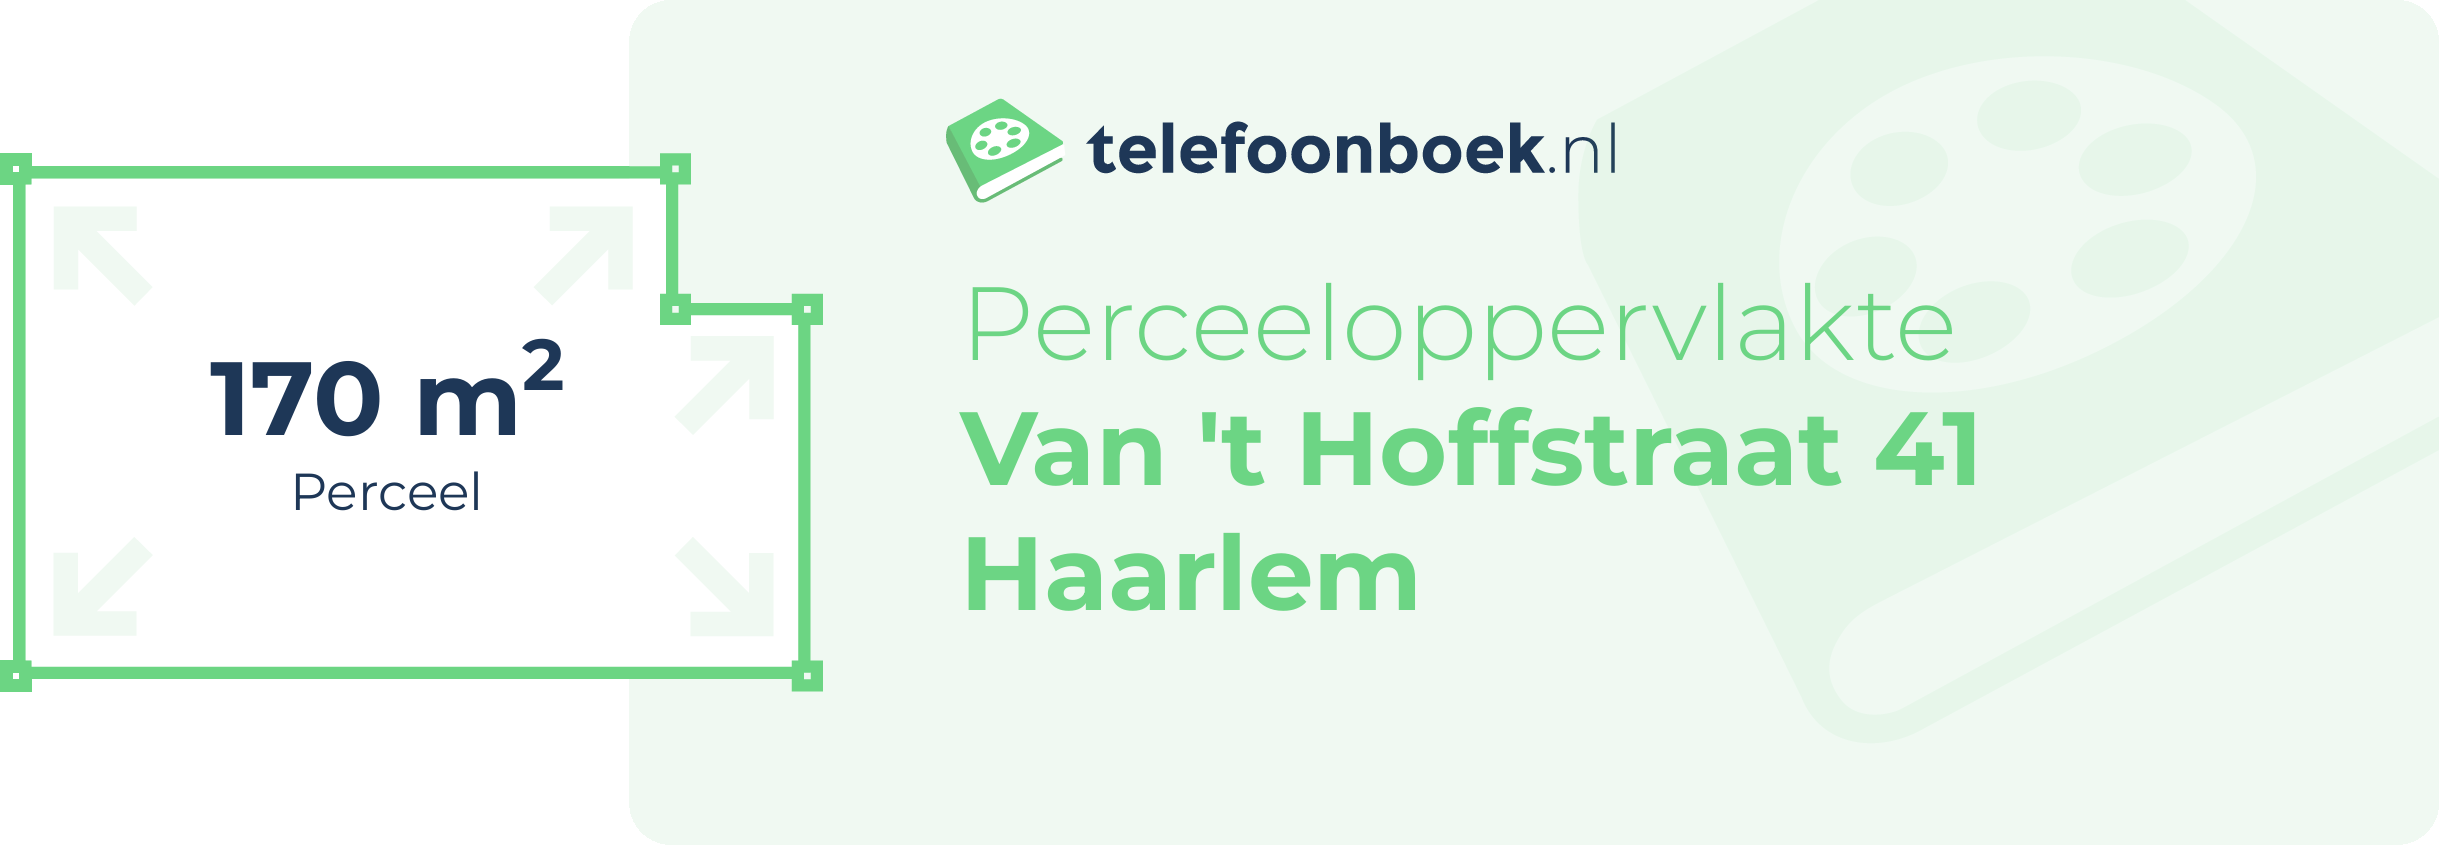 Perceeloppervlakte Van 't Hoffstraat 41 Haarlem